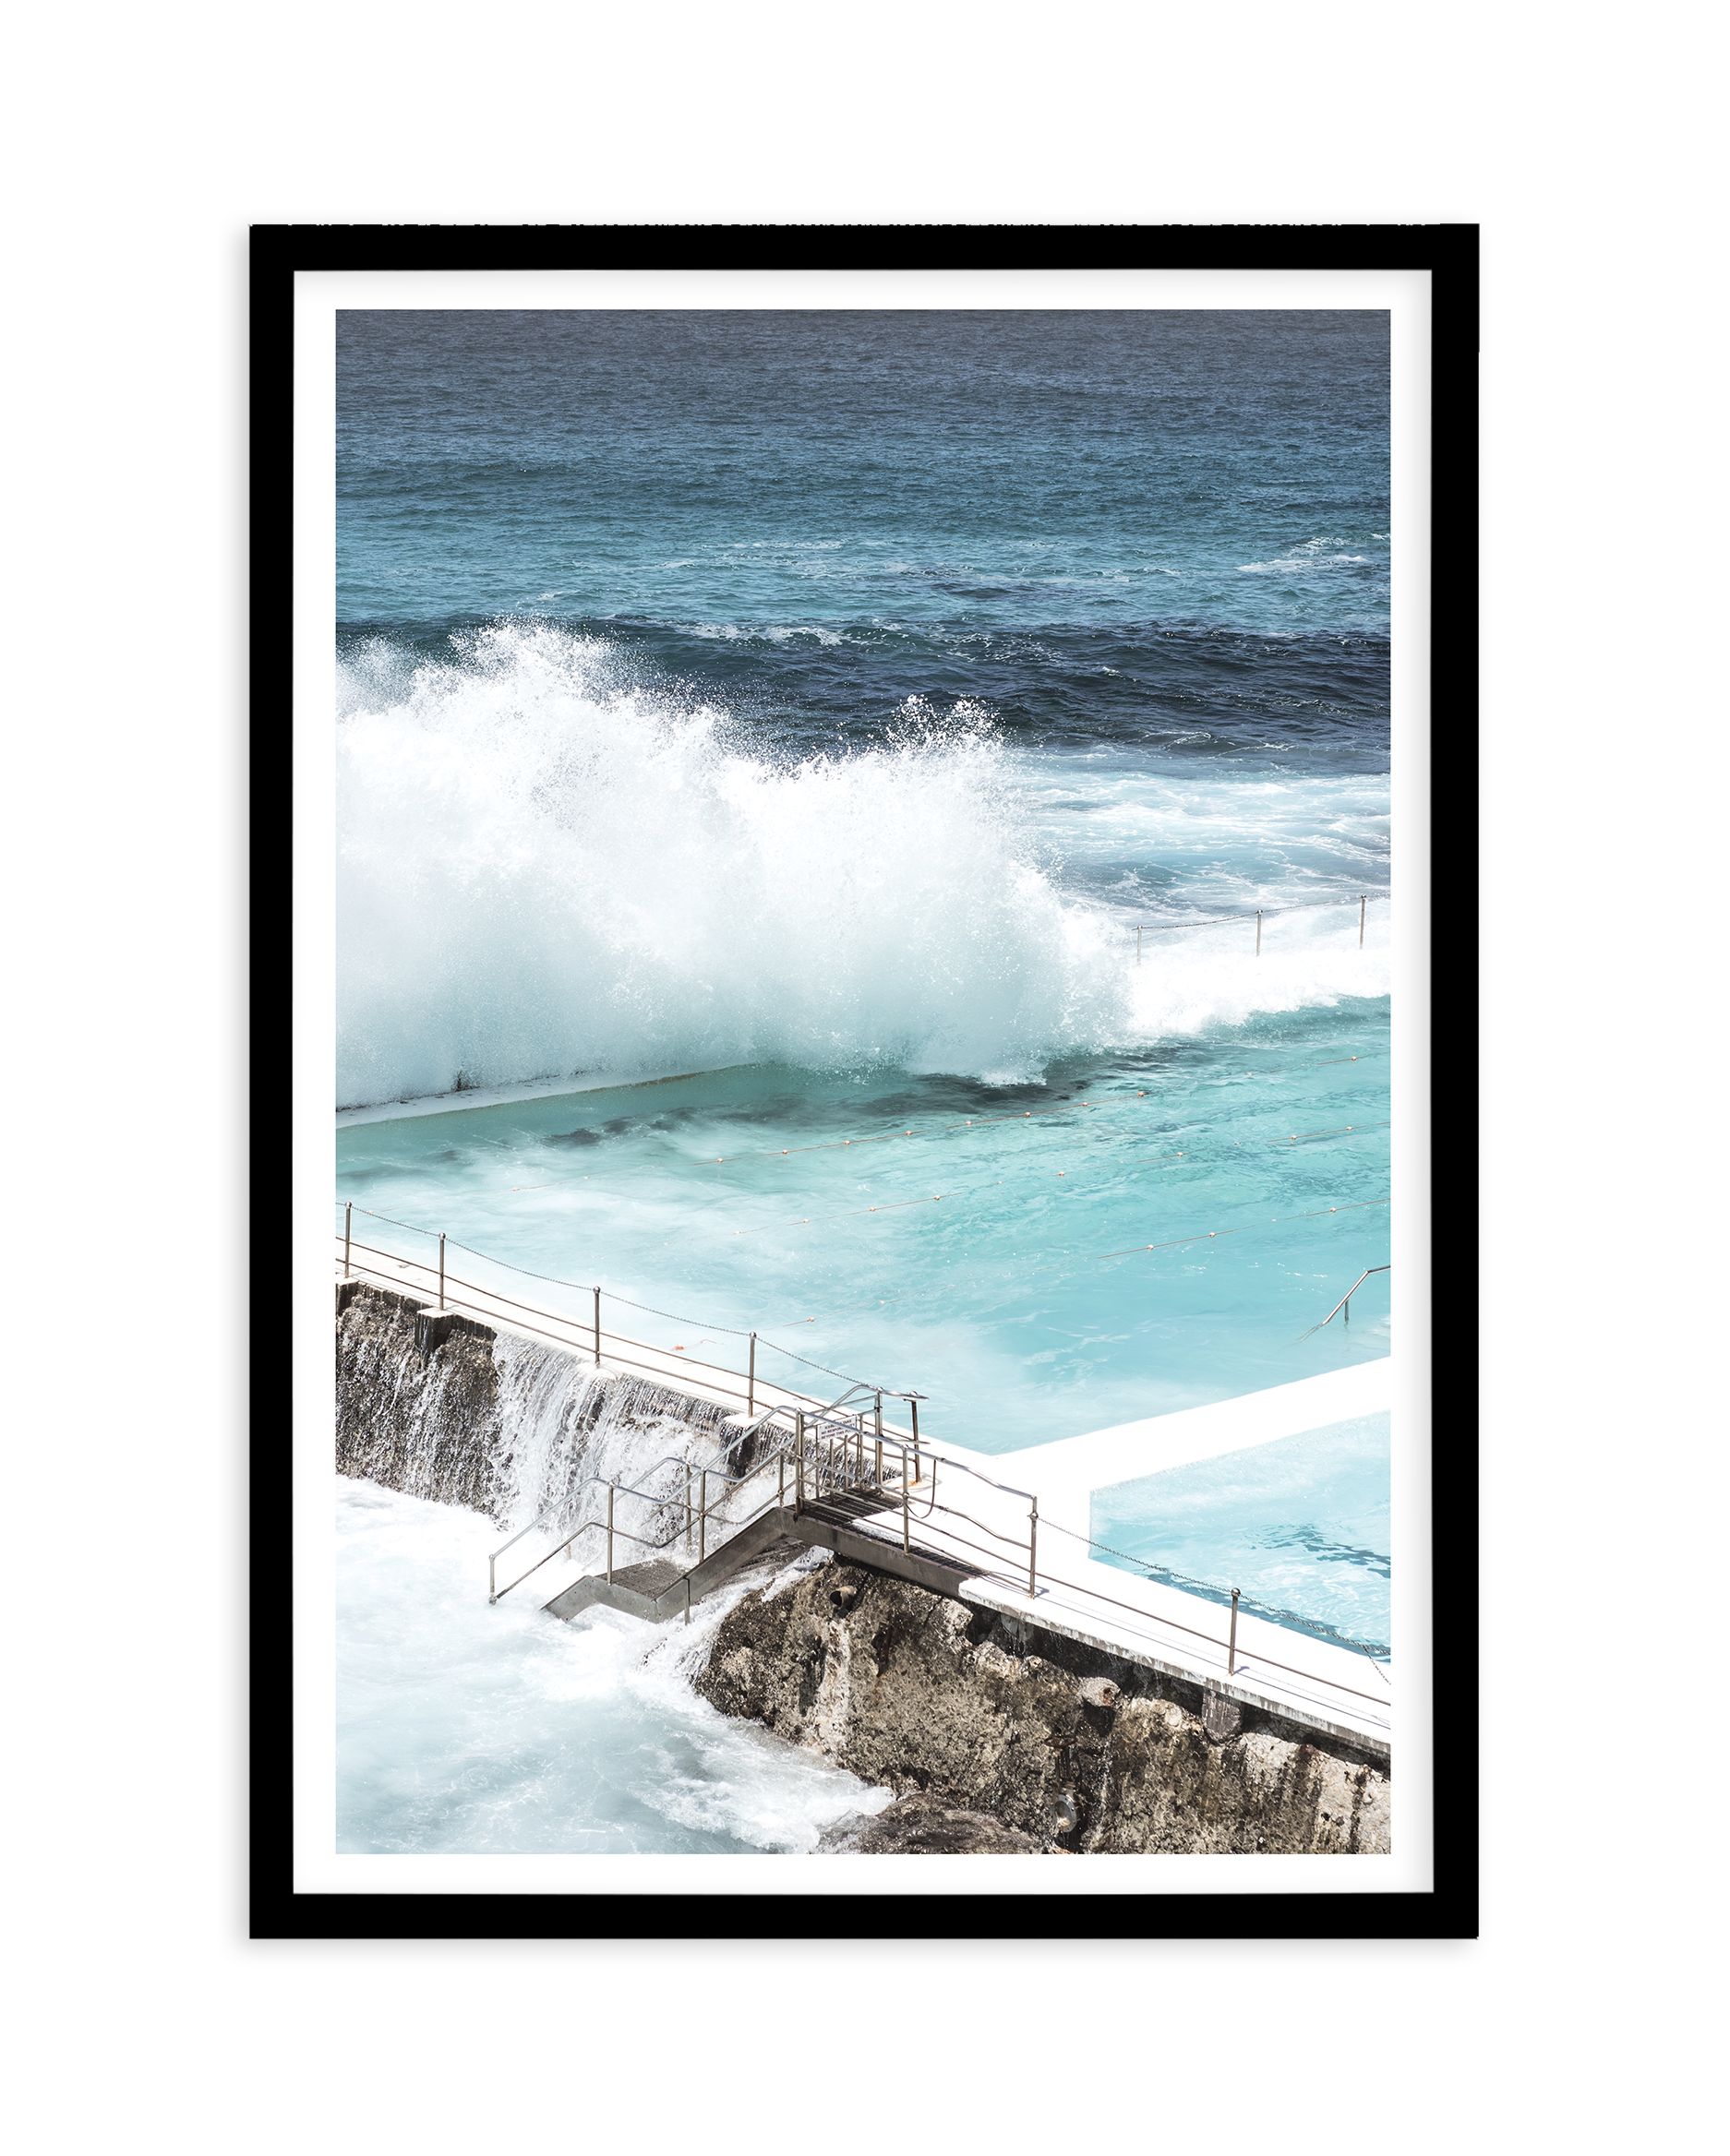 Bondi Icebergs Pool | Iconic Sydney Ocean Photographic Art Print